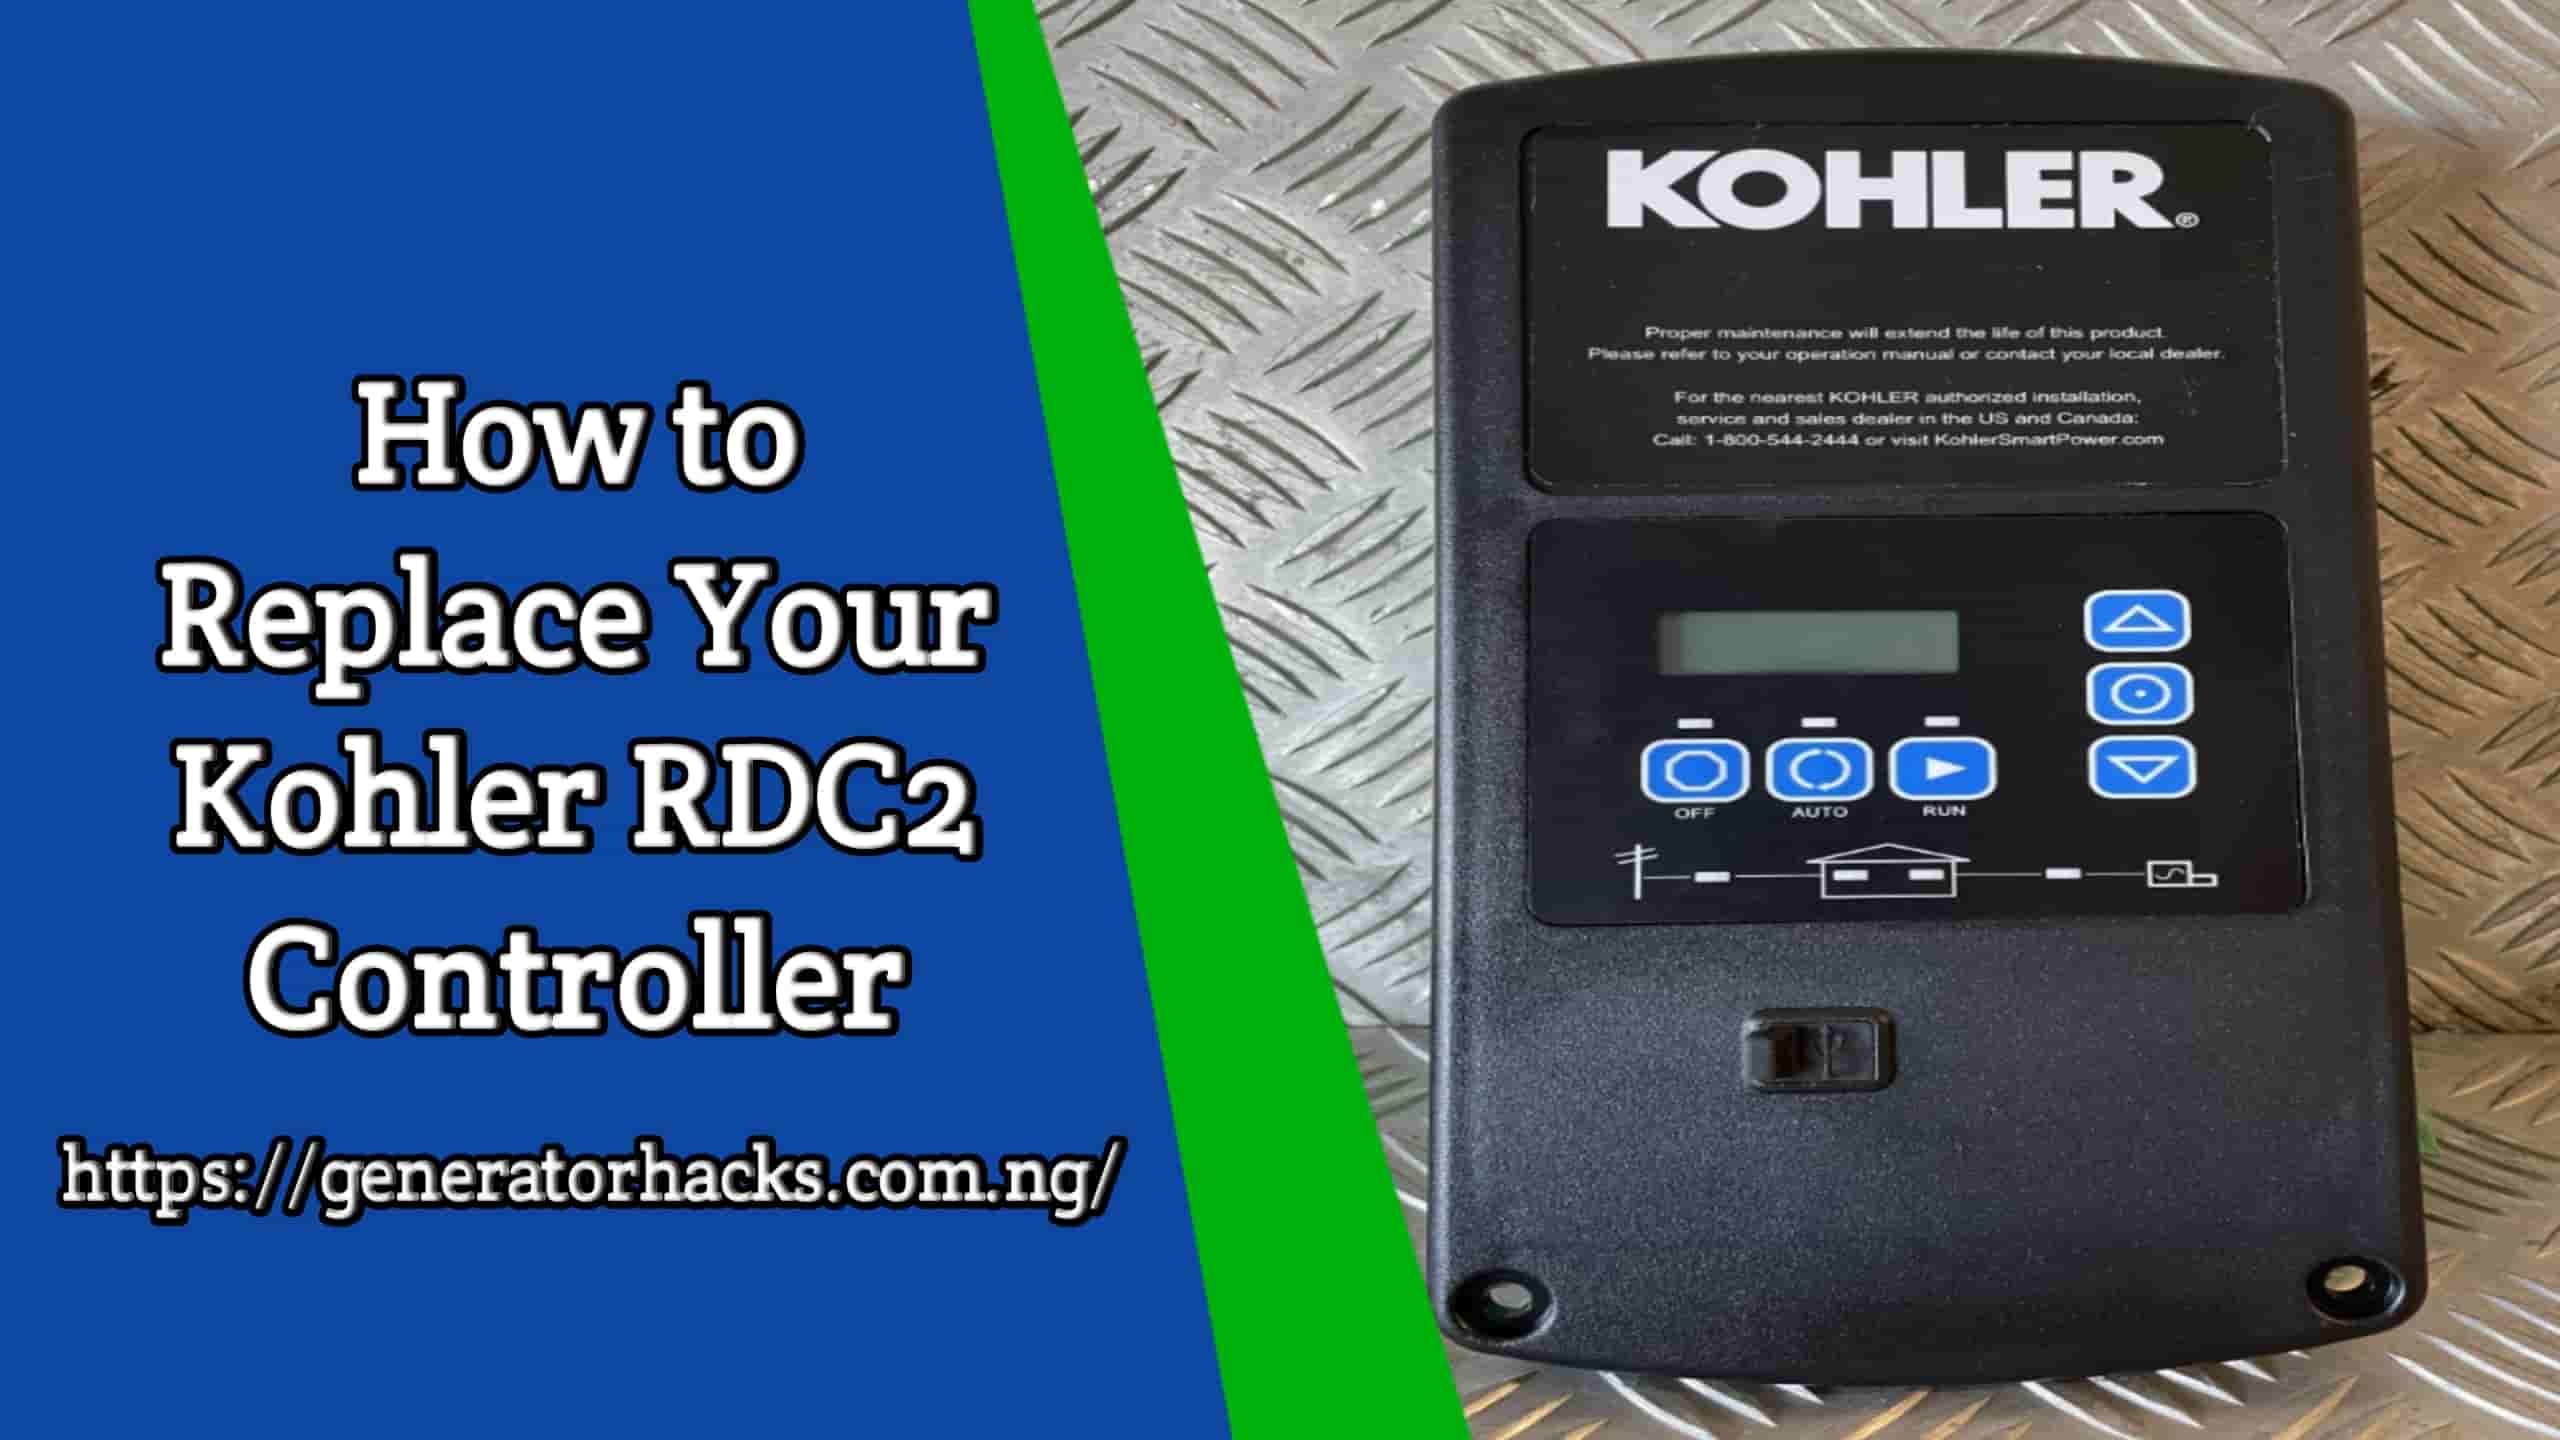 Kohler RDC2 Controller